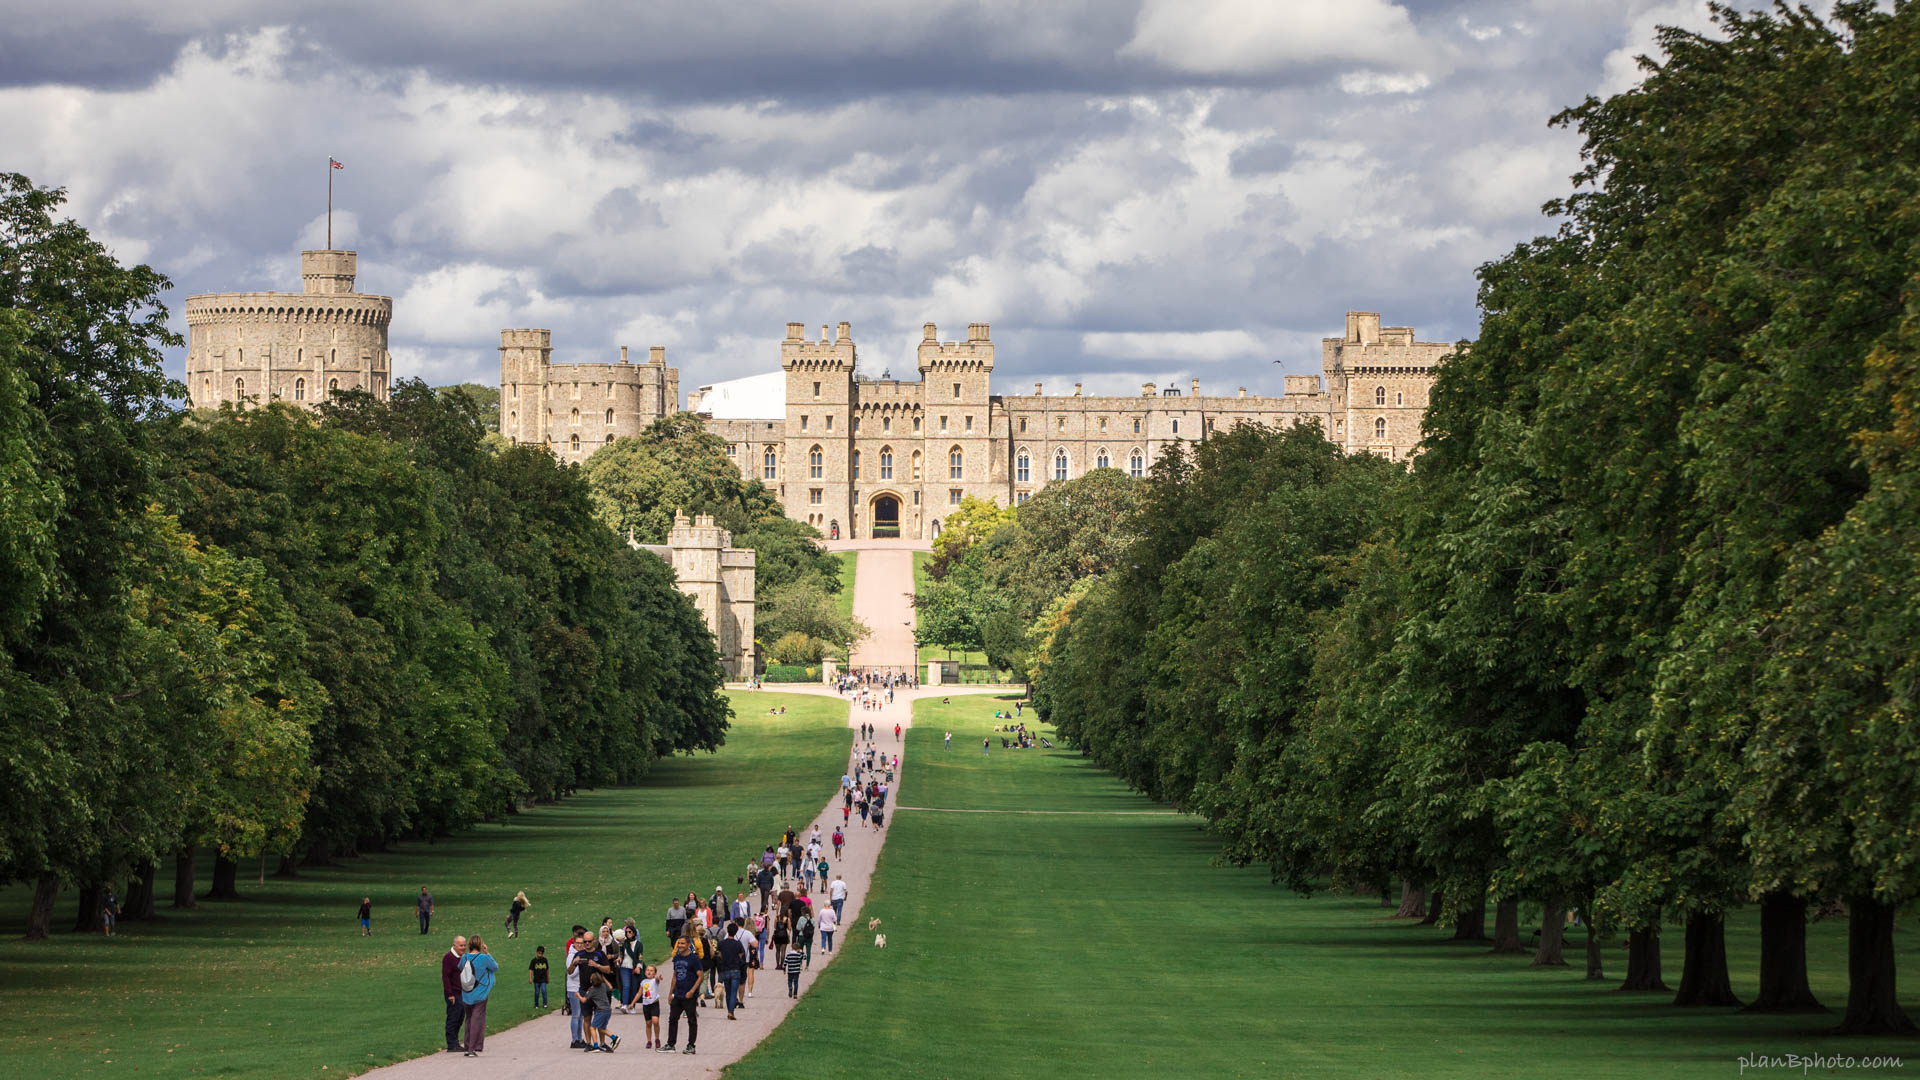 London Walk is one of the best Windsor Castle photo spots